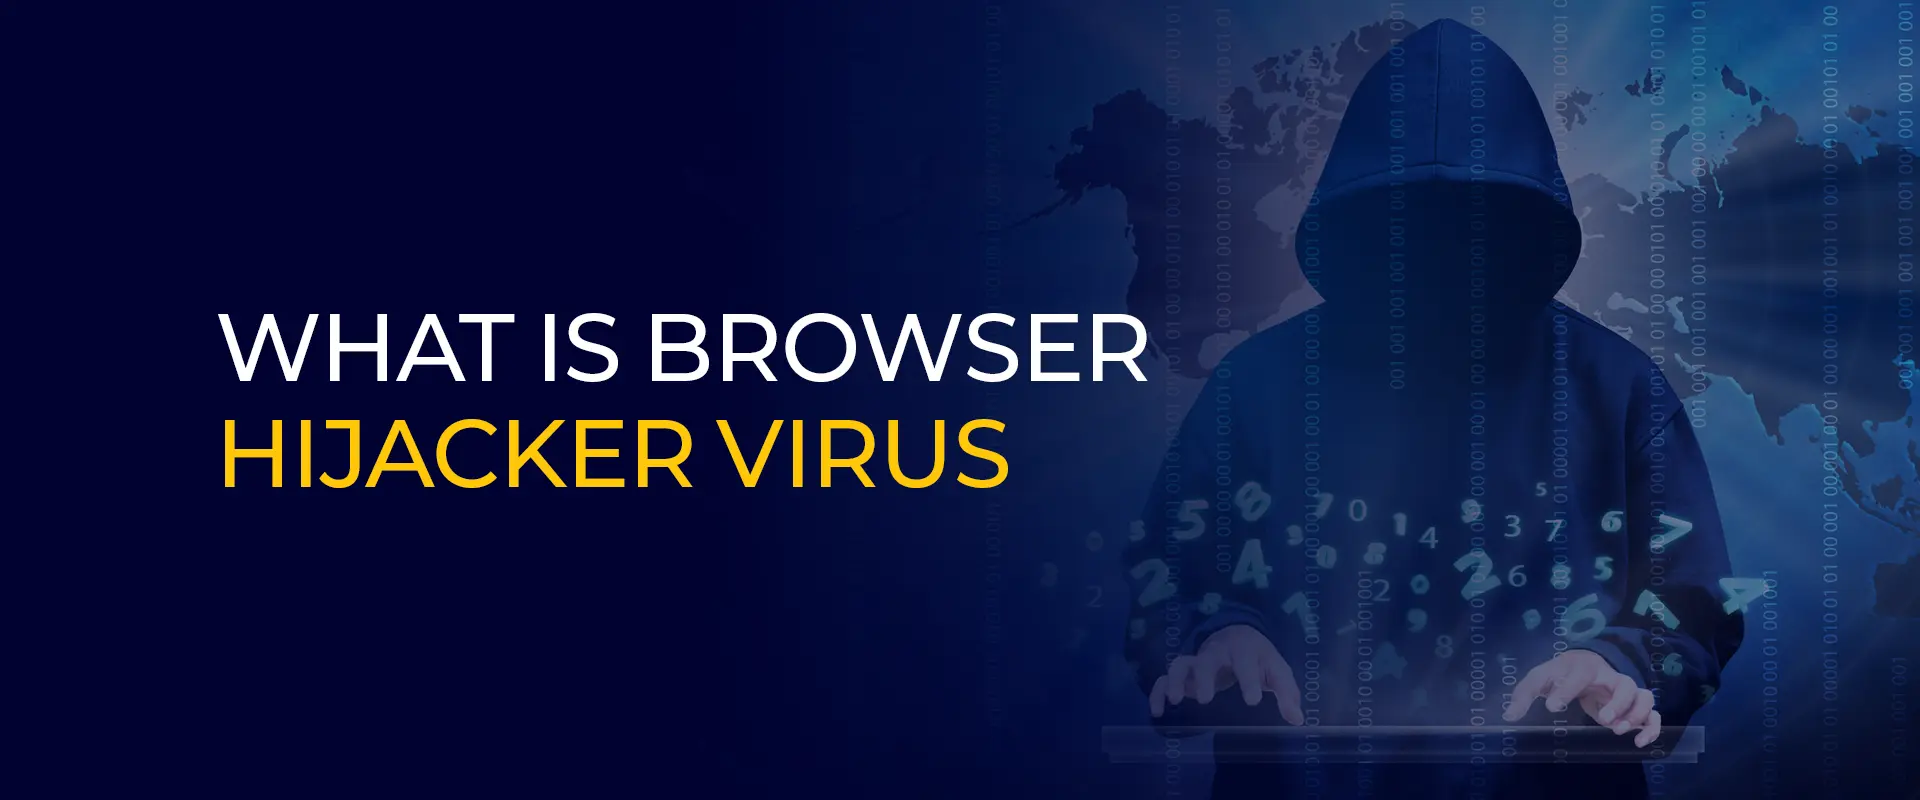 What Is Browser Hijacker Virus 900